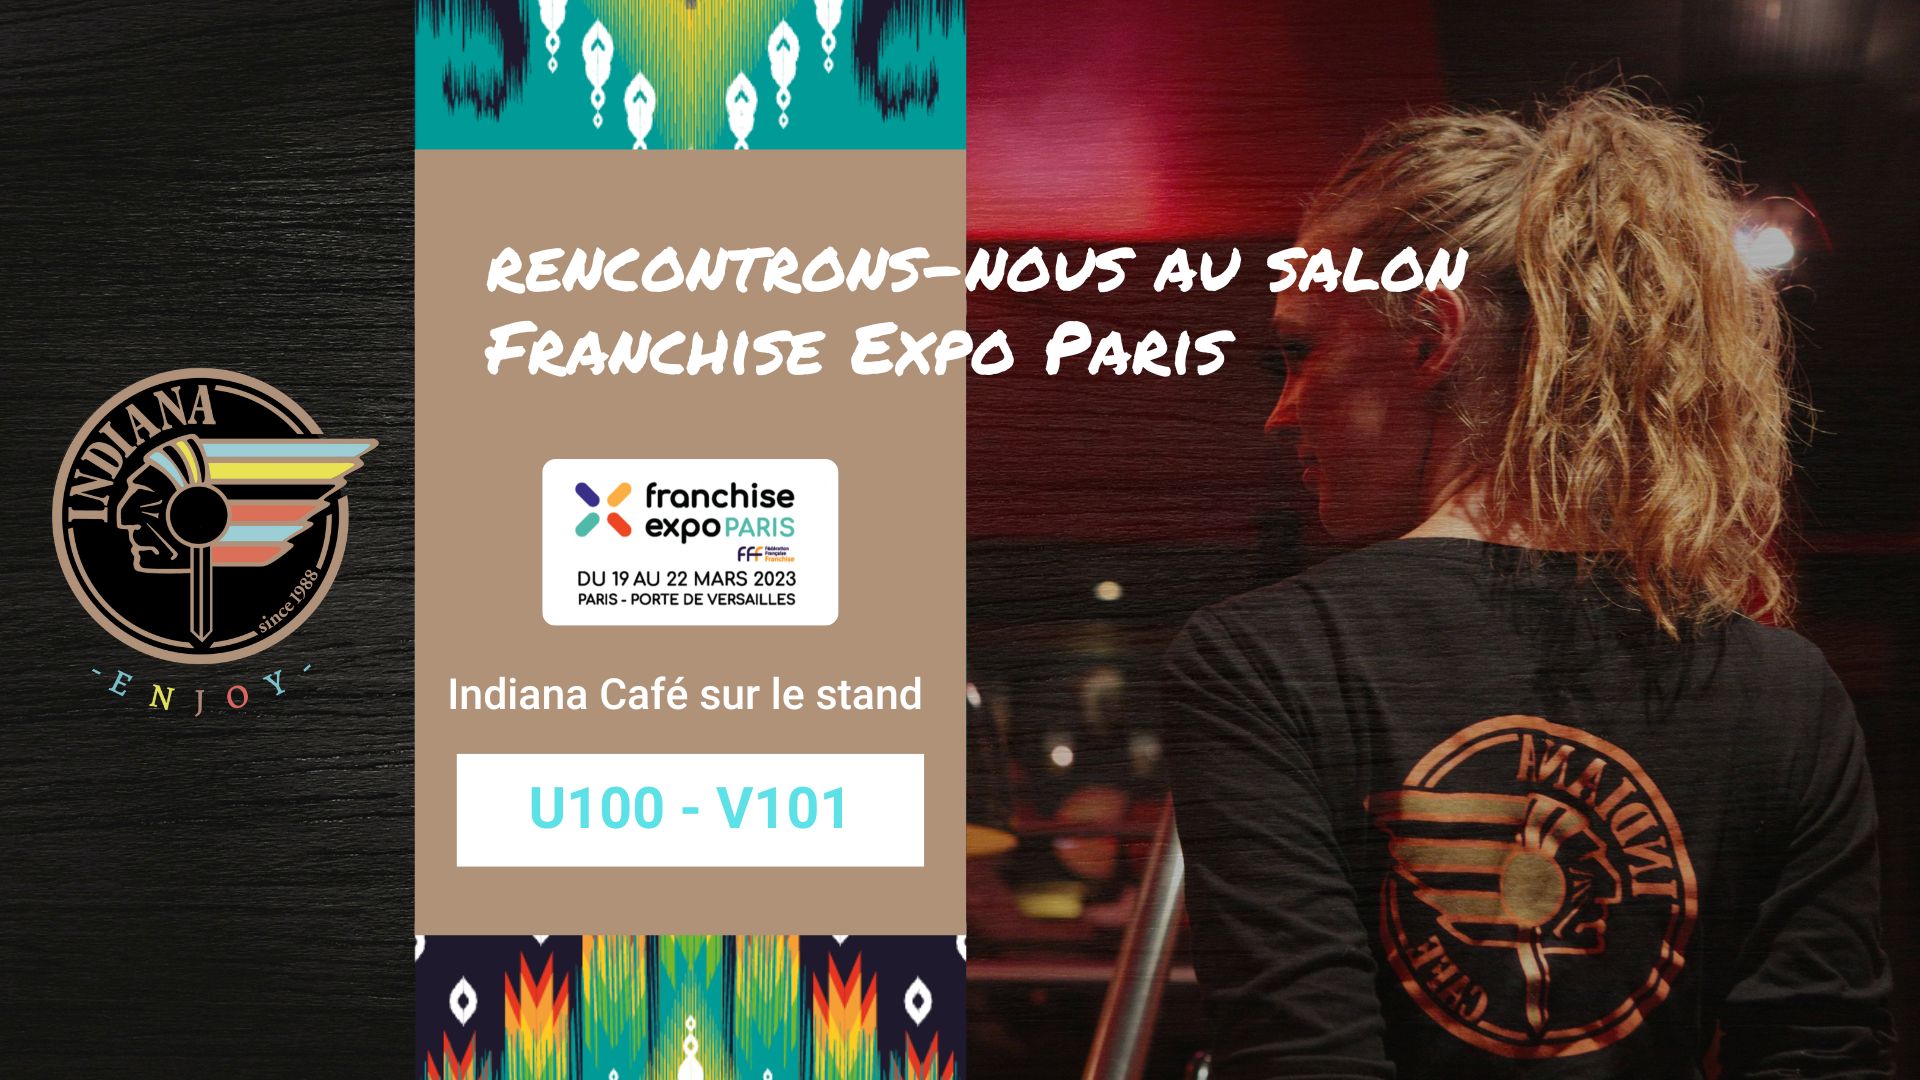 Indiana Café au salon Franchise Expo Paris 2023